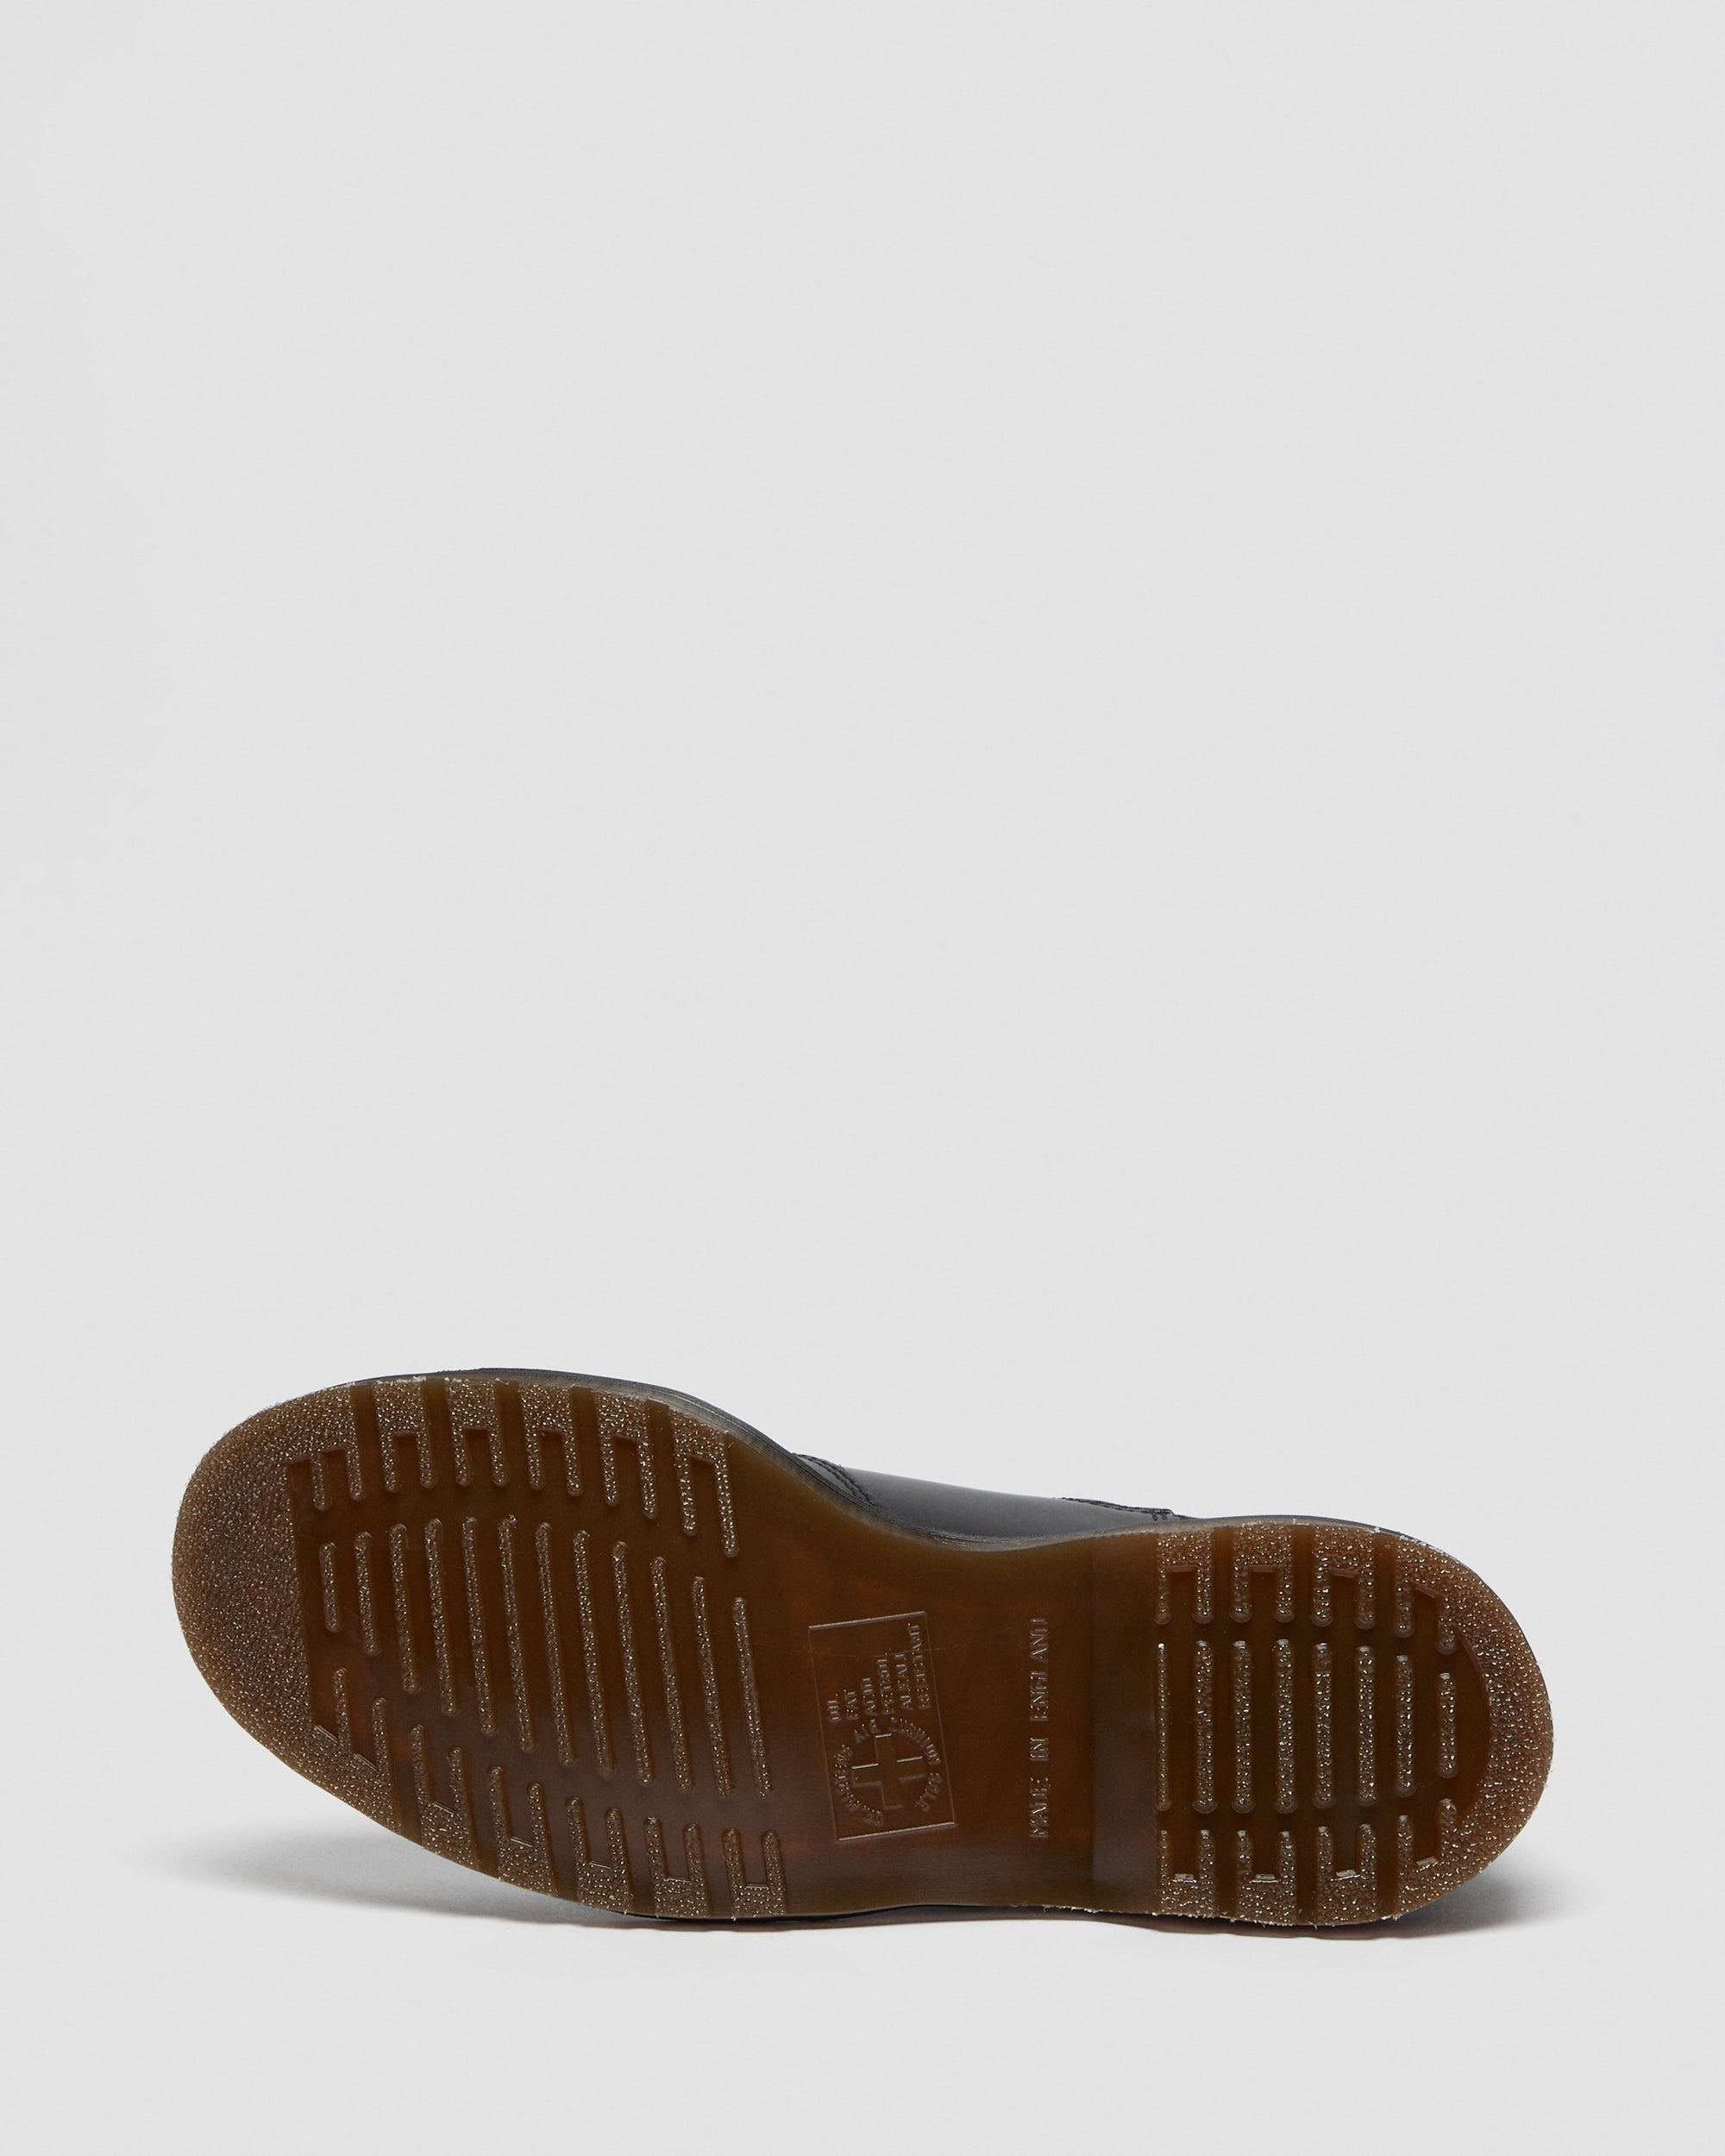 Vintage 2976 Quilon 皮靴